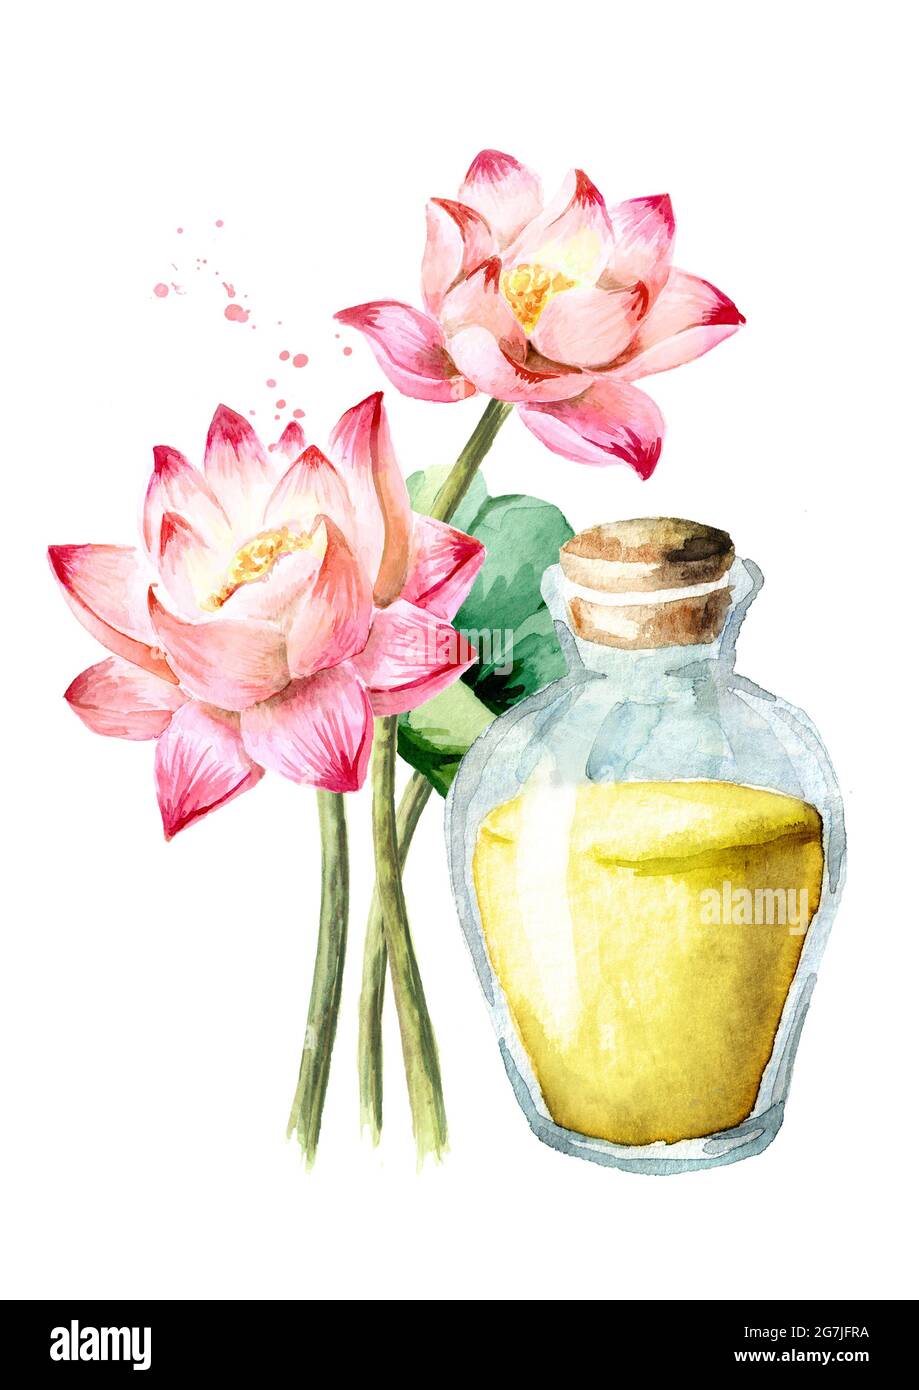 Fleur de Lotus rose et huile essentielle. Concept spa et aromathérapie.  Illustration aquarelle dessinée à la main isolée sur fond blanc Photo Stock  - Alamy